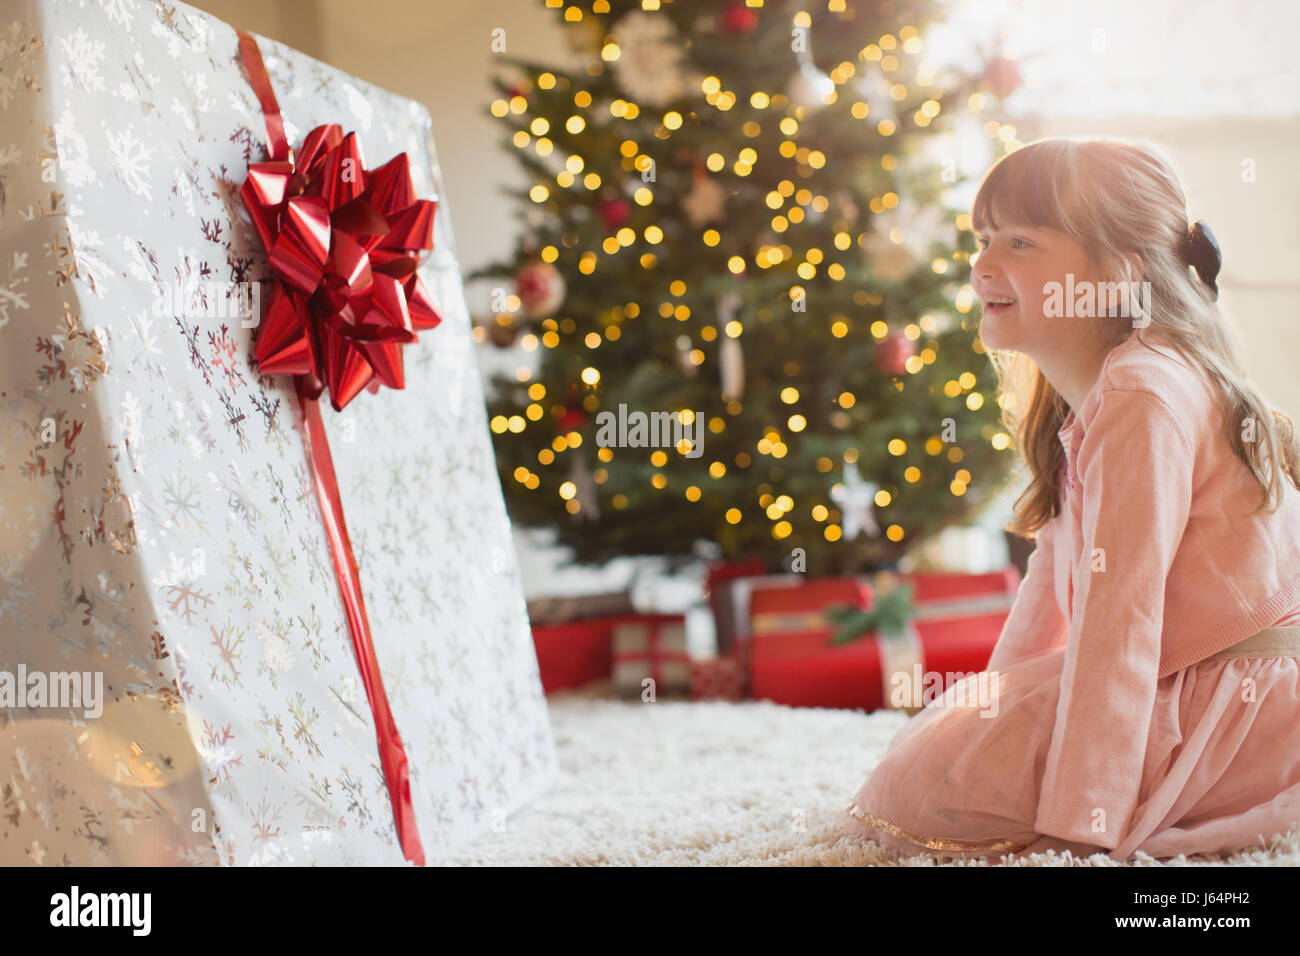 Girl smiling en prévision au grand cadeau de Noël près de l'arbre de Noël Banque D'Images